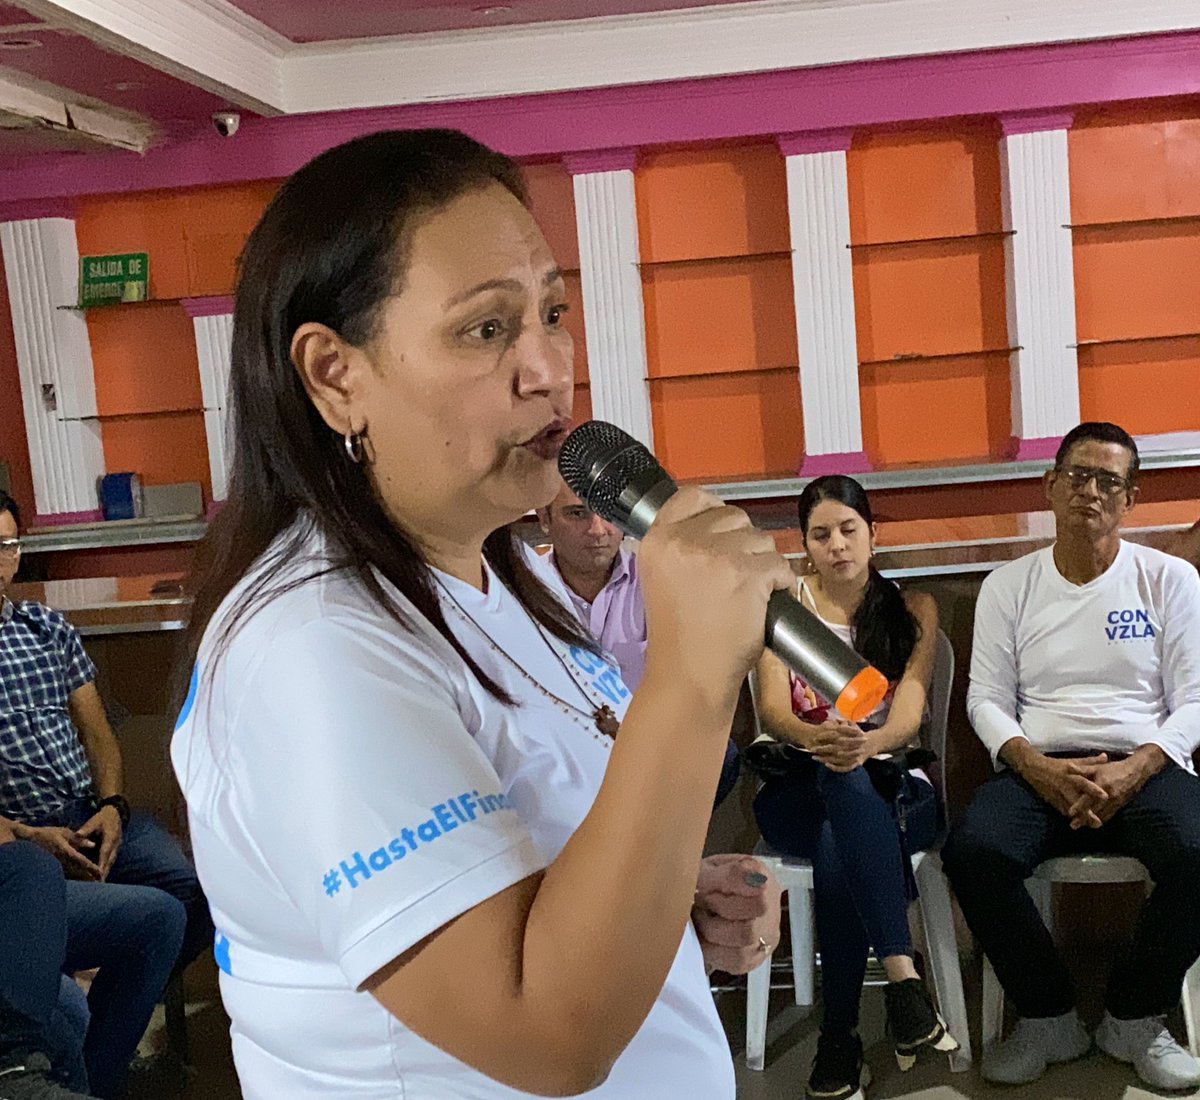 #EnFotos| Asamblea de Ciudadanos en Nueva Bolivia municipio Tulio Febres Cordero.

¡Esta es una lucha espiritual y por eso la vamos a ganar!

Con @MariaCorinaYA y @EdmundoGU #HastaElFinal.